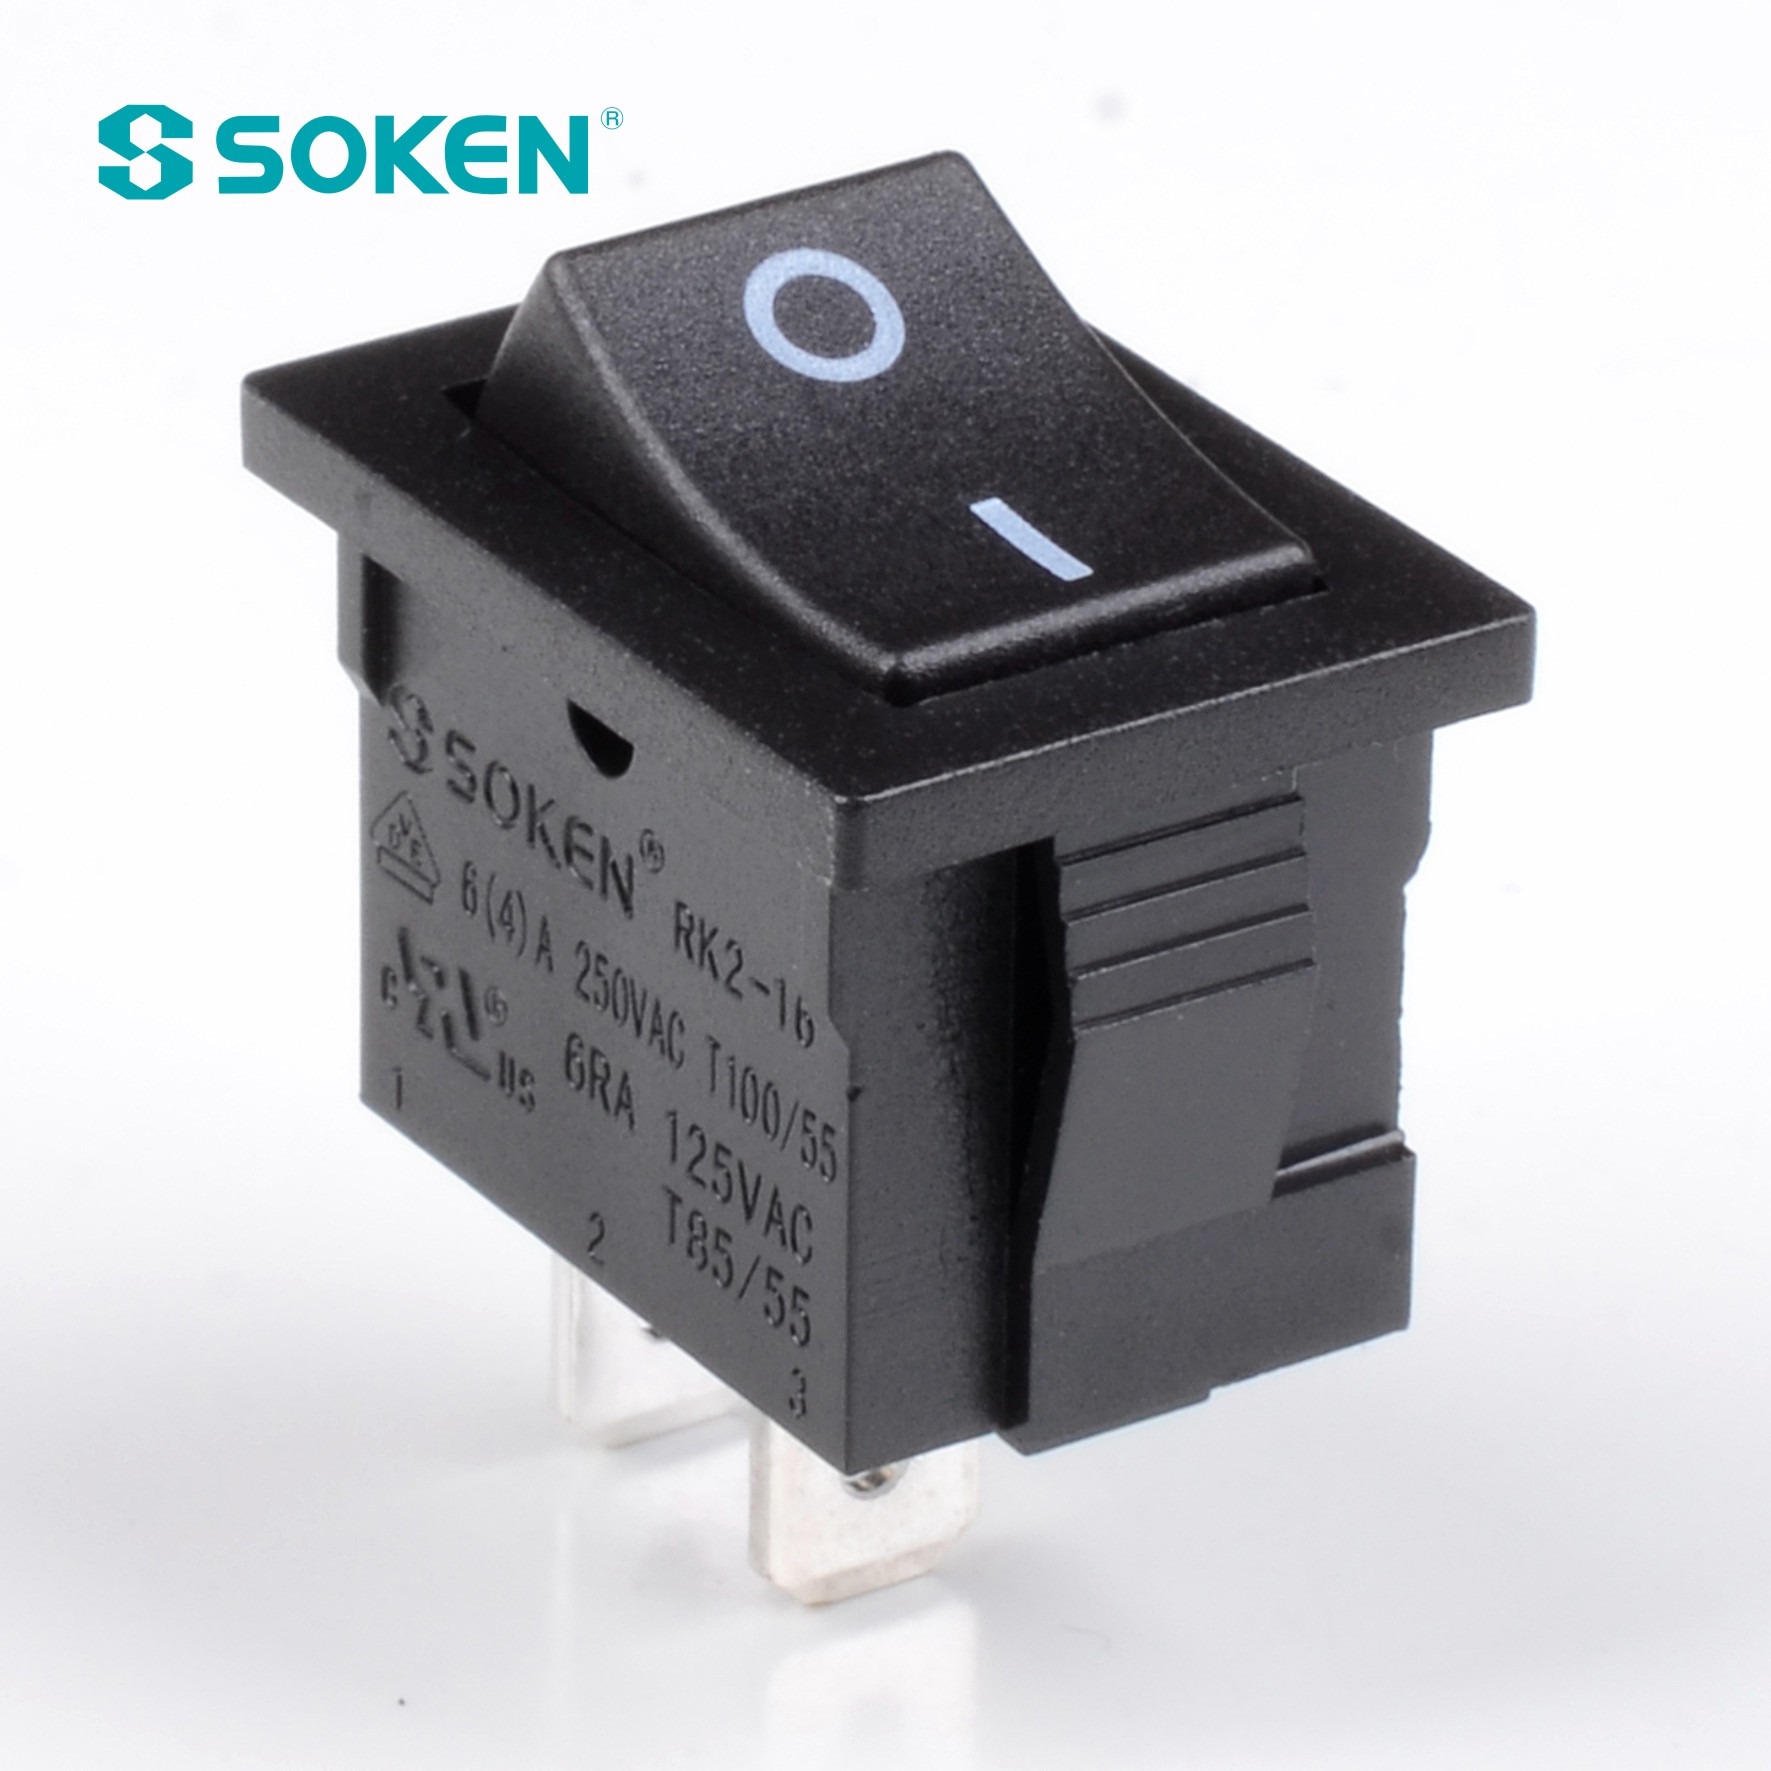 Sokne Rk2-16 1X2 B/B interruptor basculante encendido y apagado